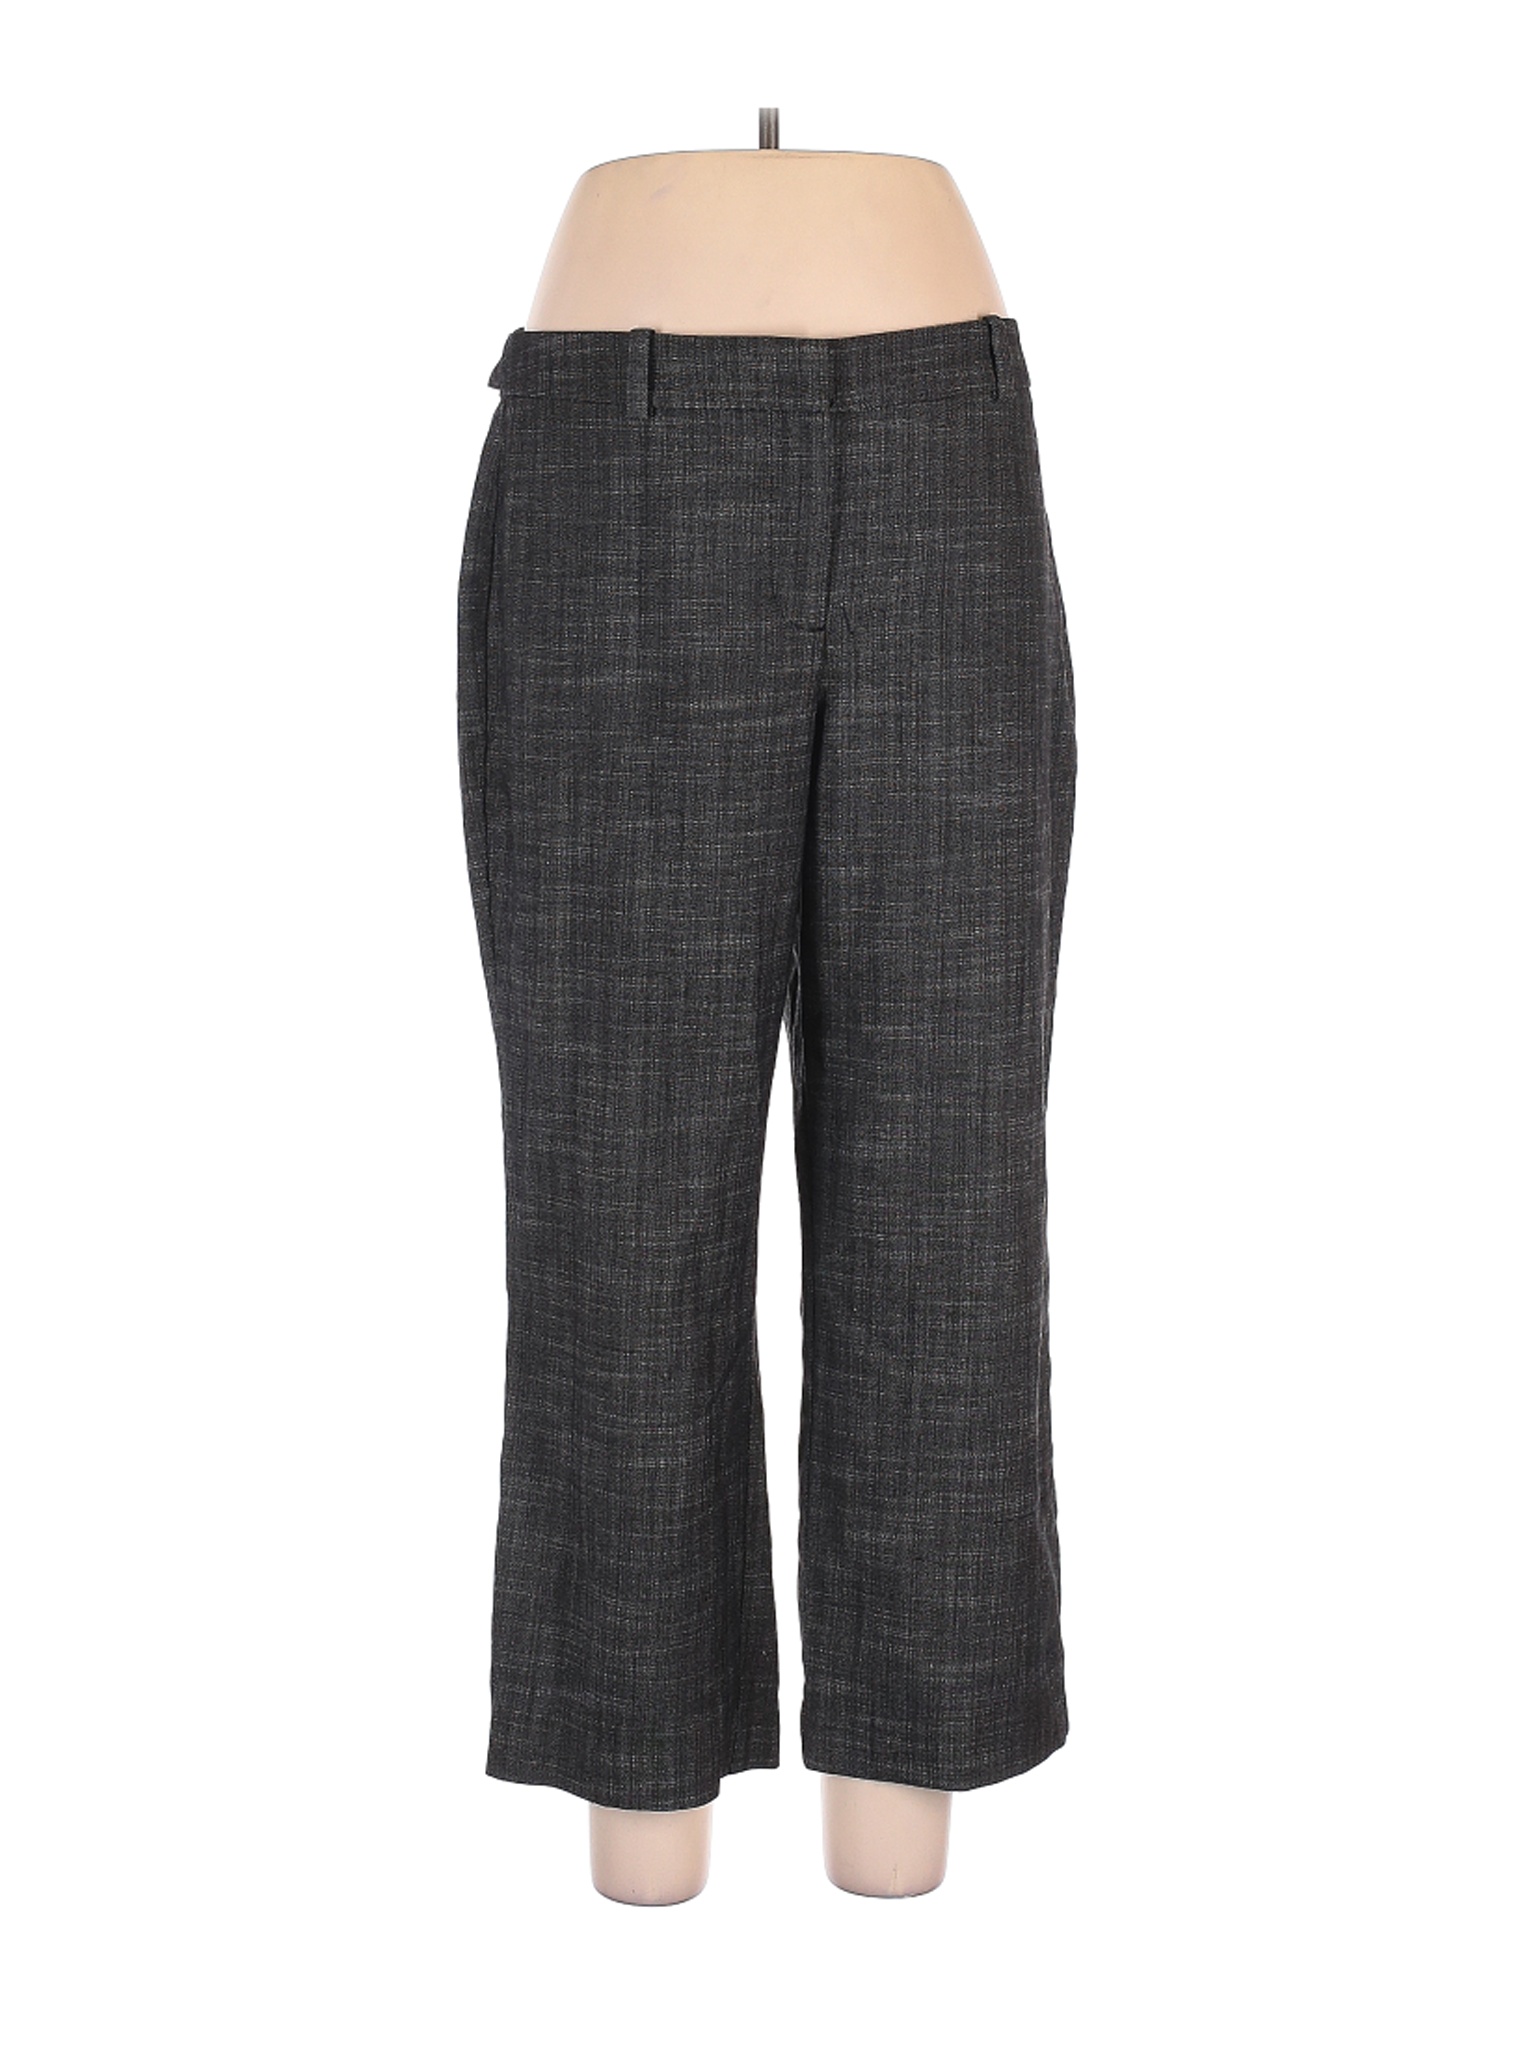 Ann Taylor Factory Women Gray Dress Pants 10 | eBay